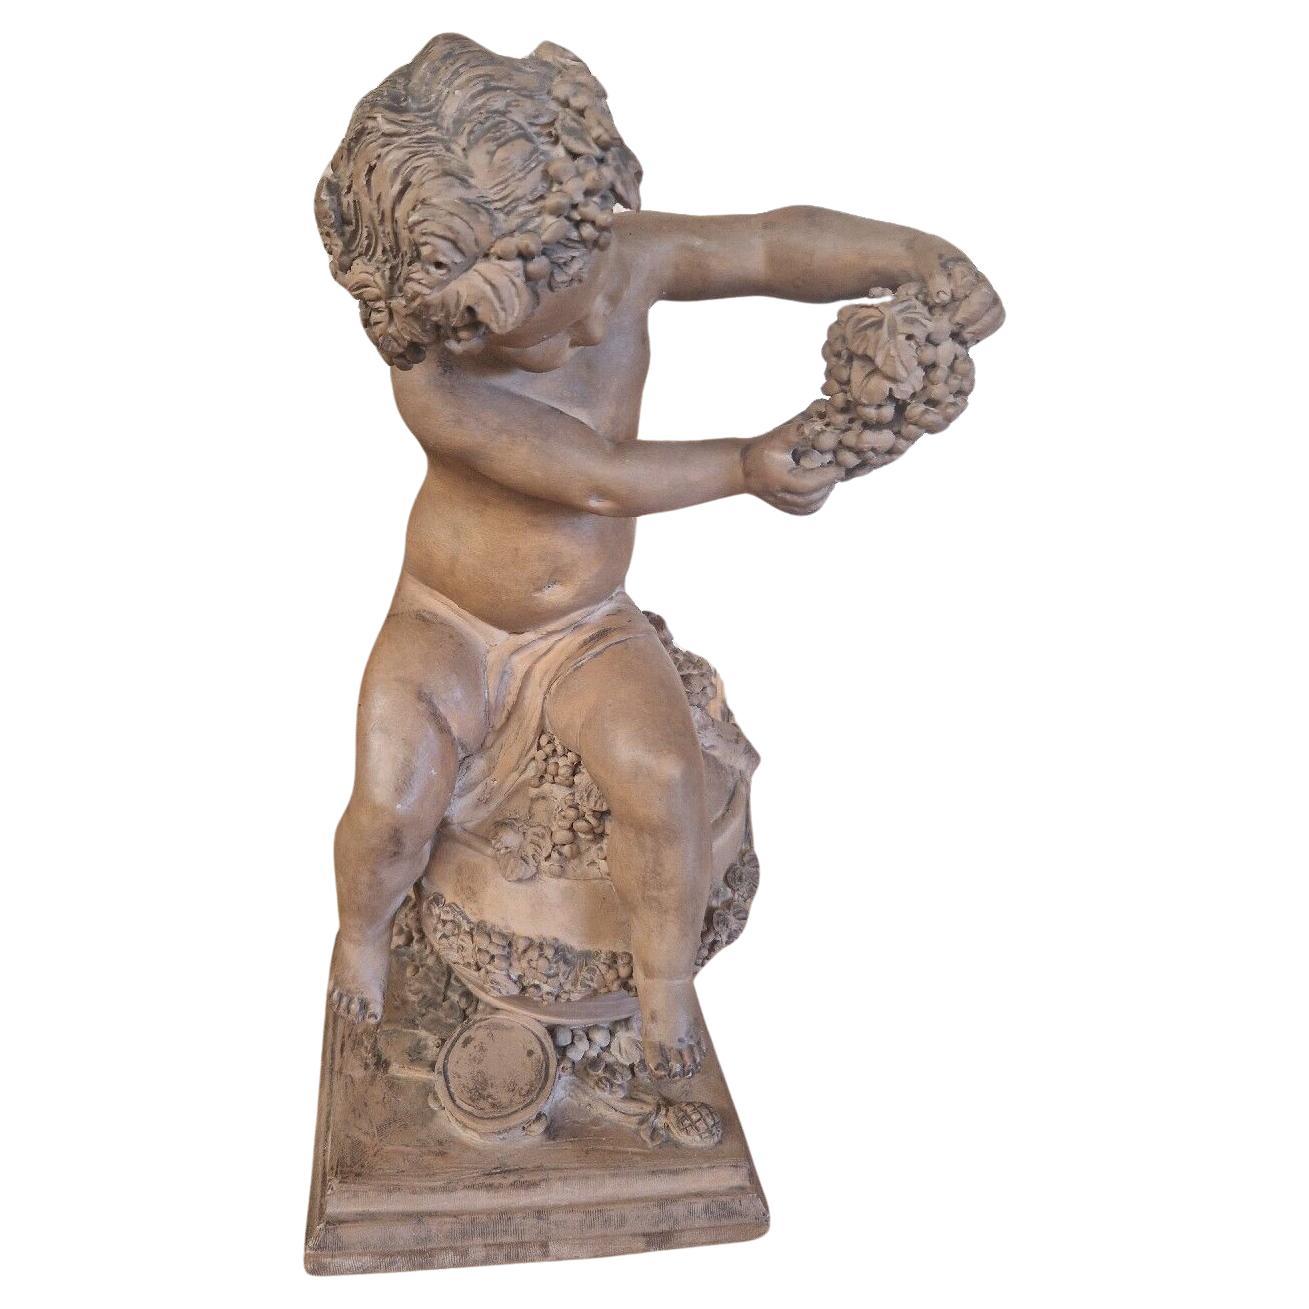 Nous avons le plaisir de proposer à la vente cette magnifique sculpture de style romain.

Statue de Bacchus jeune - Dieu grec du vin et des vendanges

Signature à la base FAGUI

Terre cuite

Belle patine

Origine française

Magnifiques détails